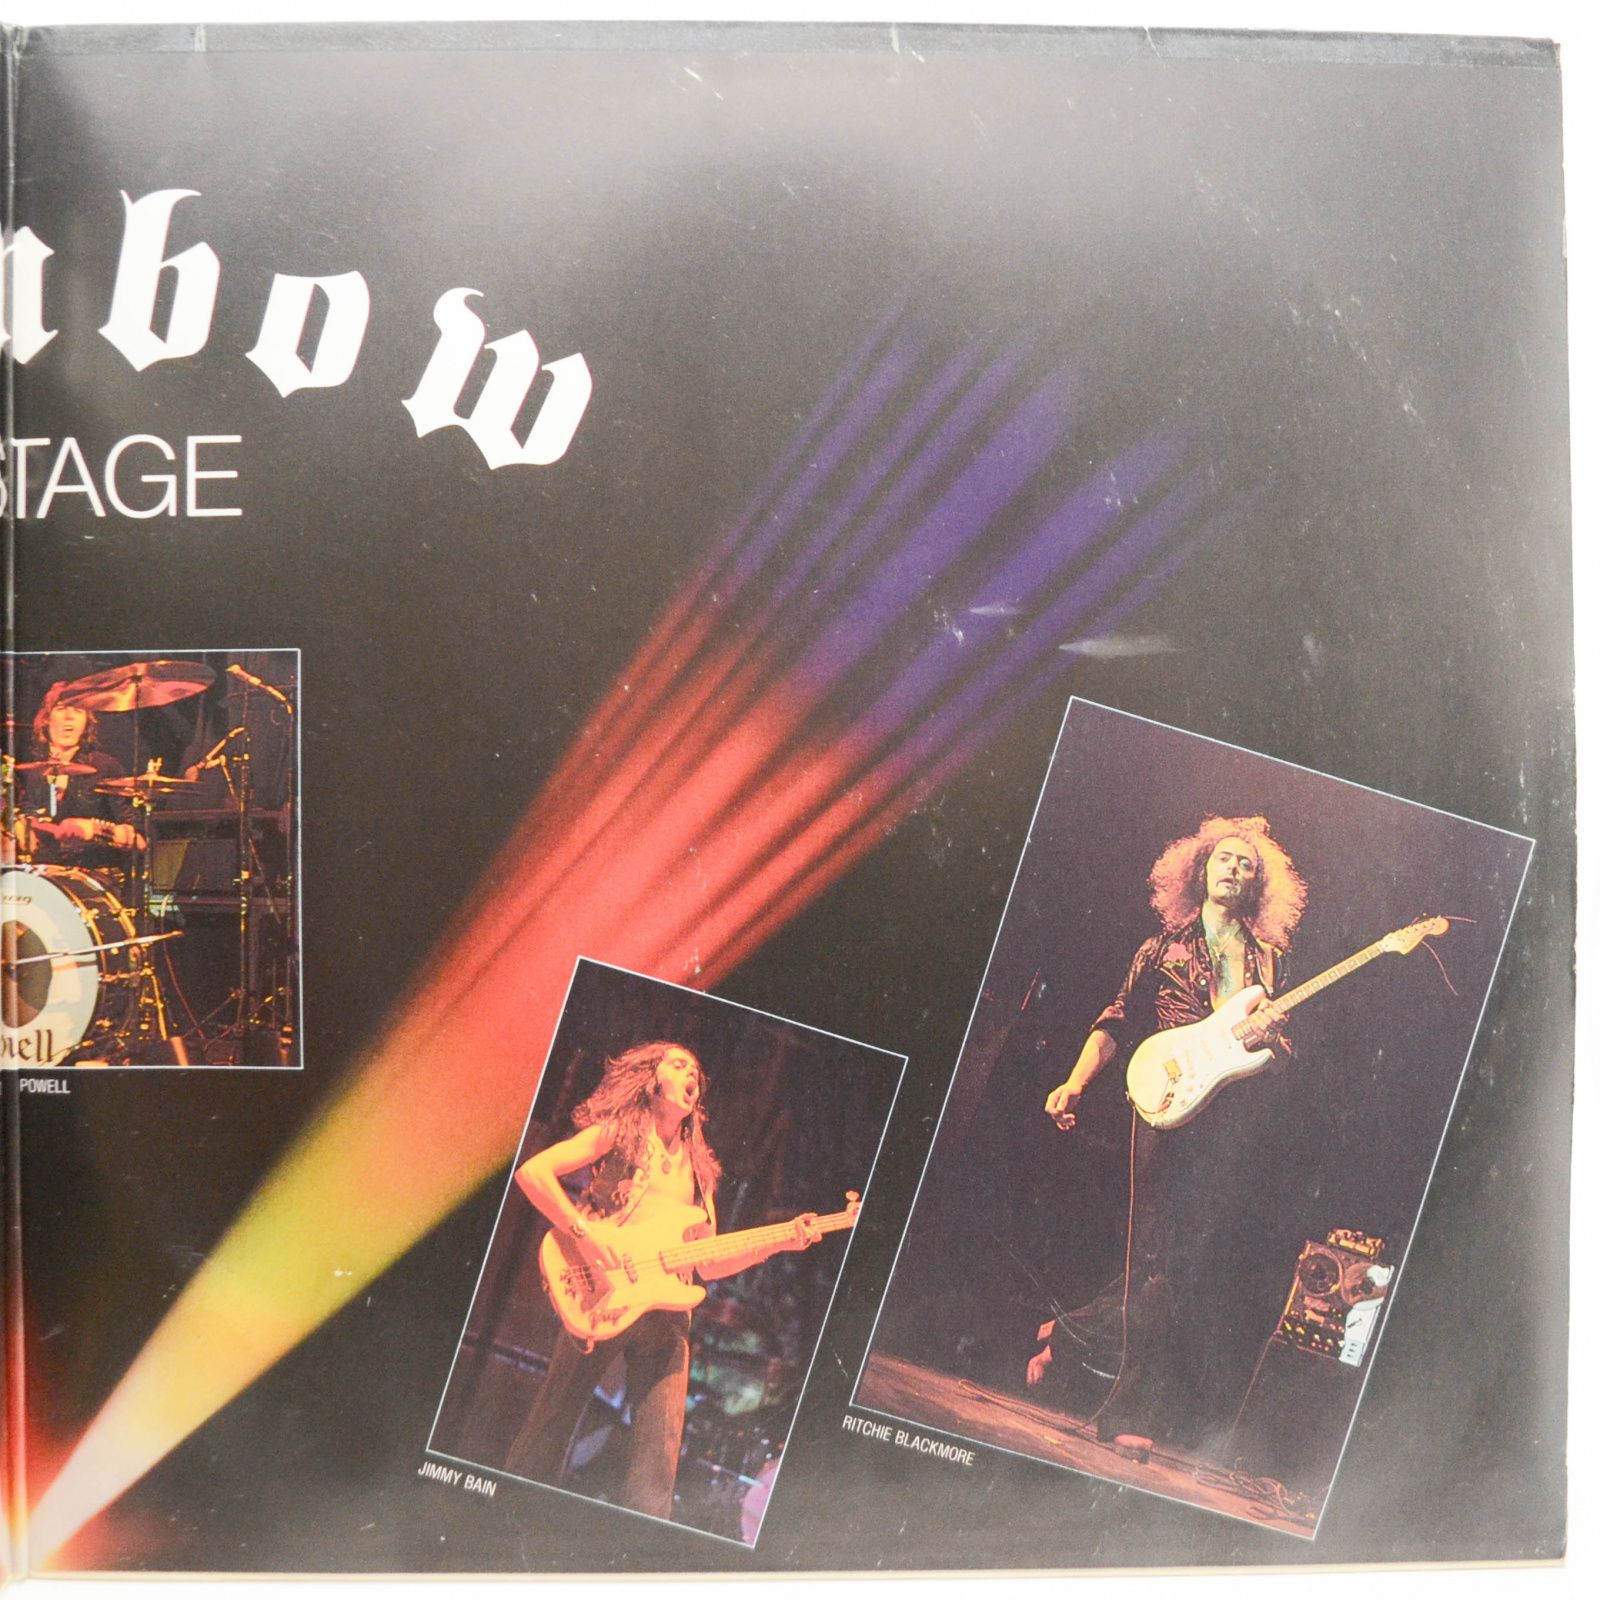 Rainbow — On Stage (2LP), 1977